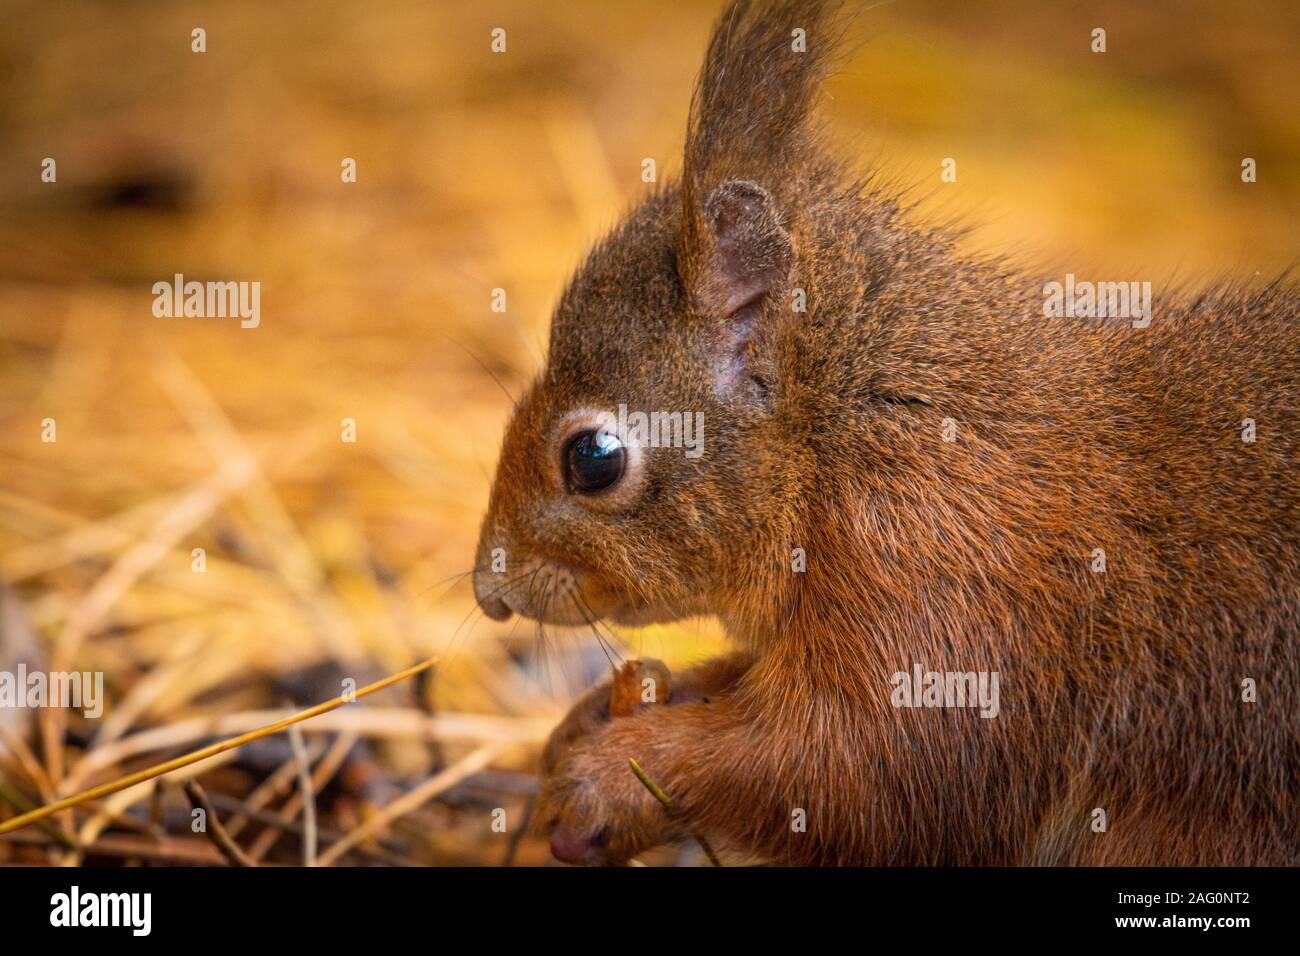 Cerrar prtrait de la cabeza de una ardilla roja (Sciurus vulgaris) comiendo una tuerca Foto de stock